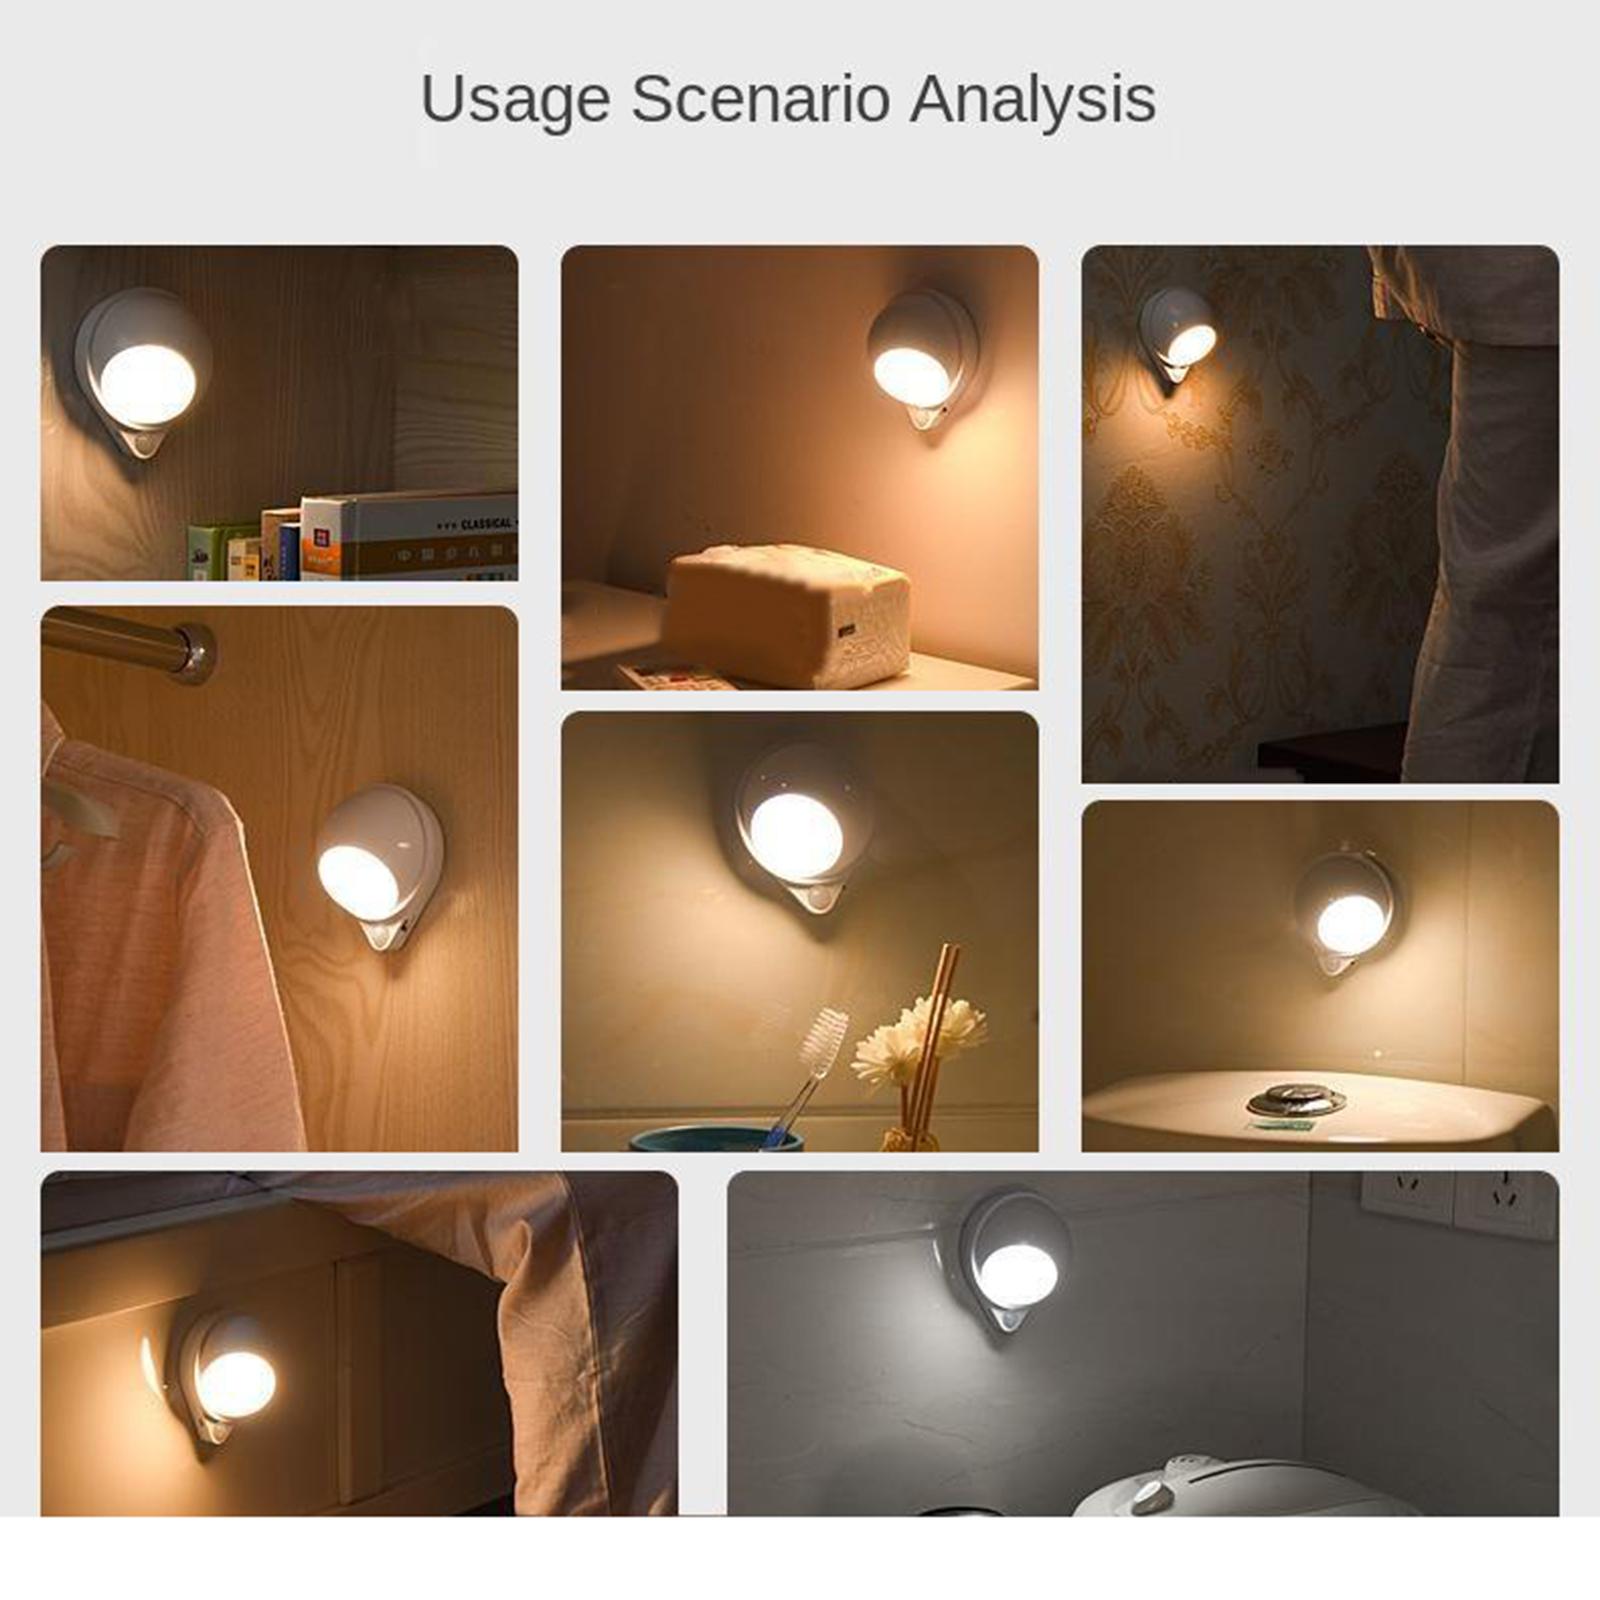 LED Night Light Bedroom Living Room Kids Room Lamp Home Decor